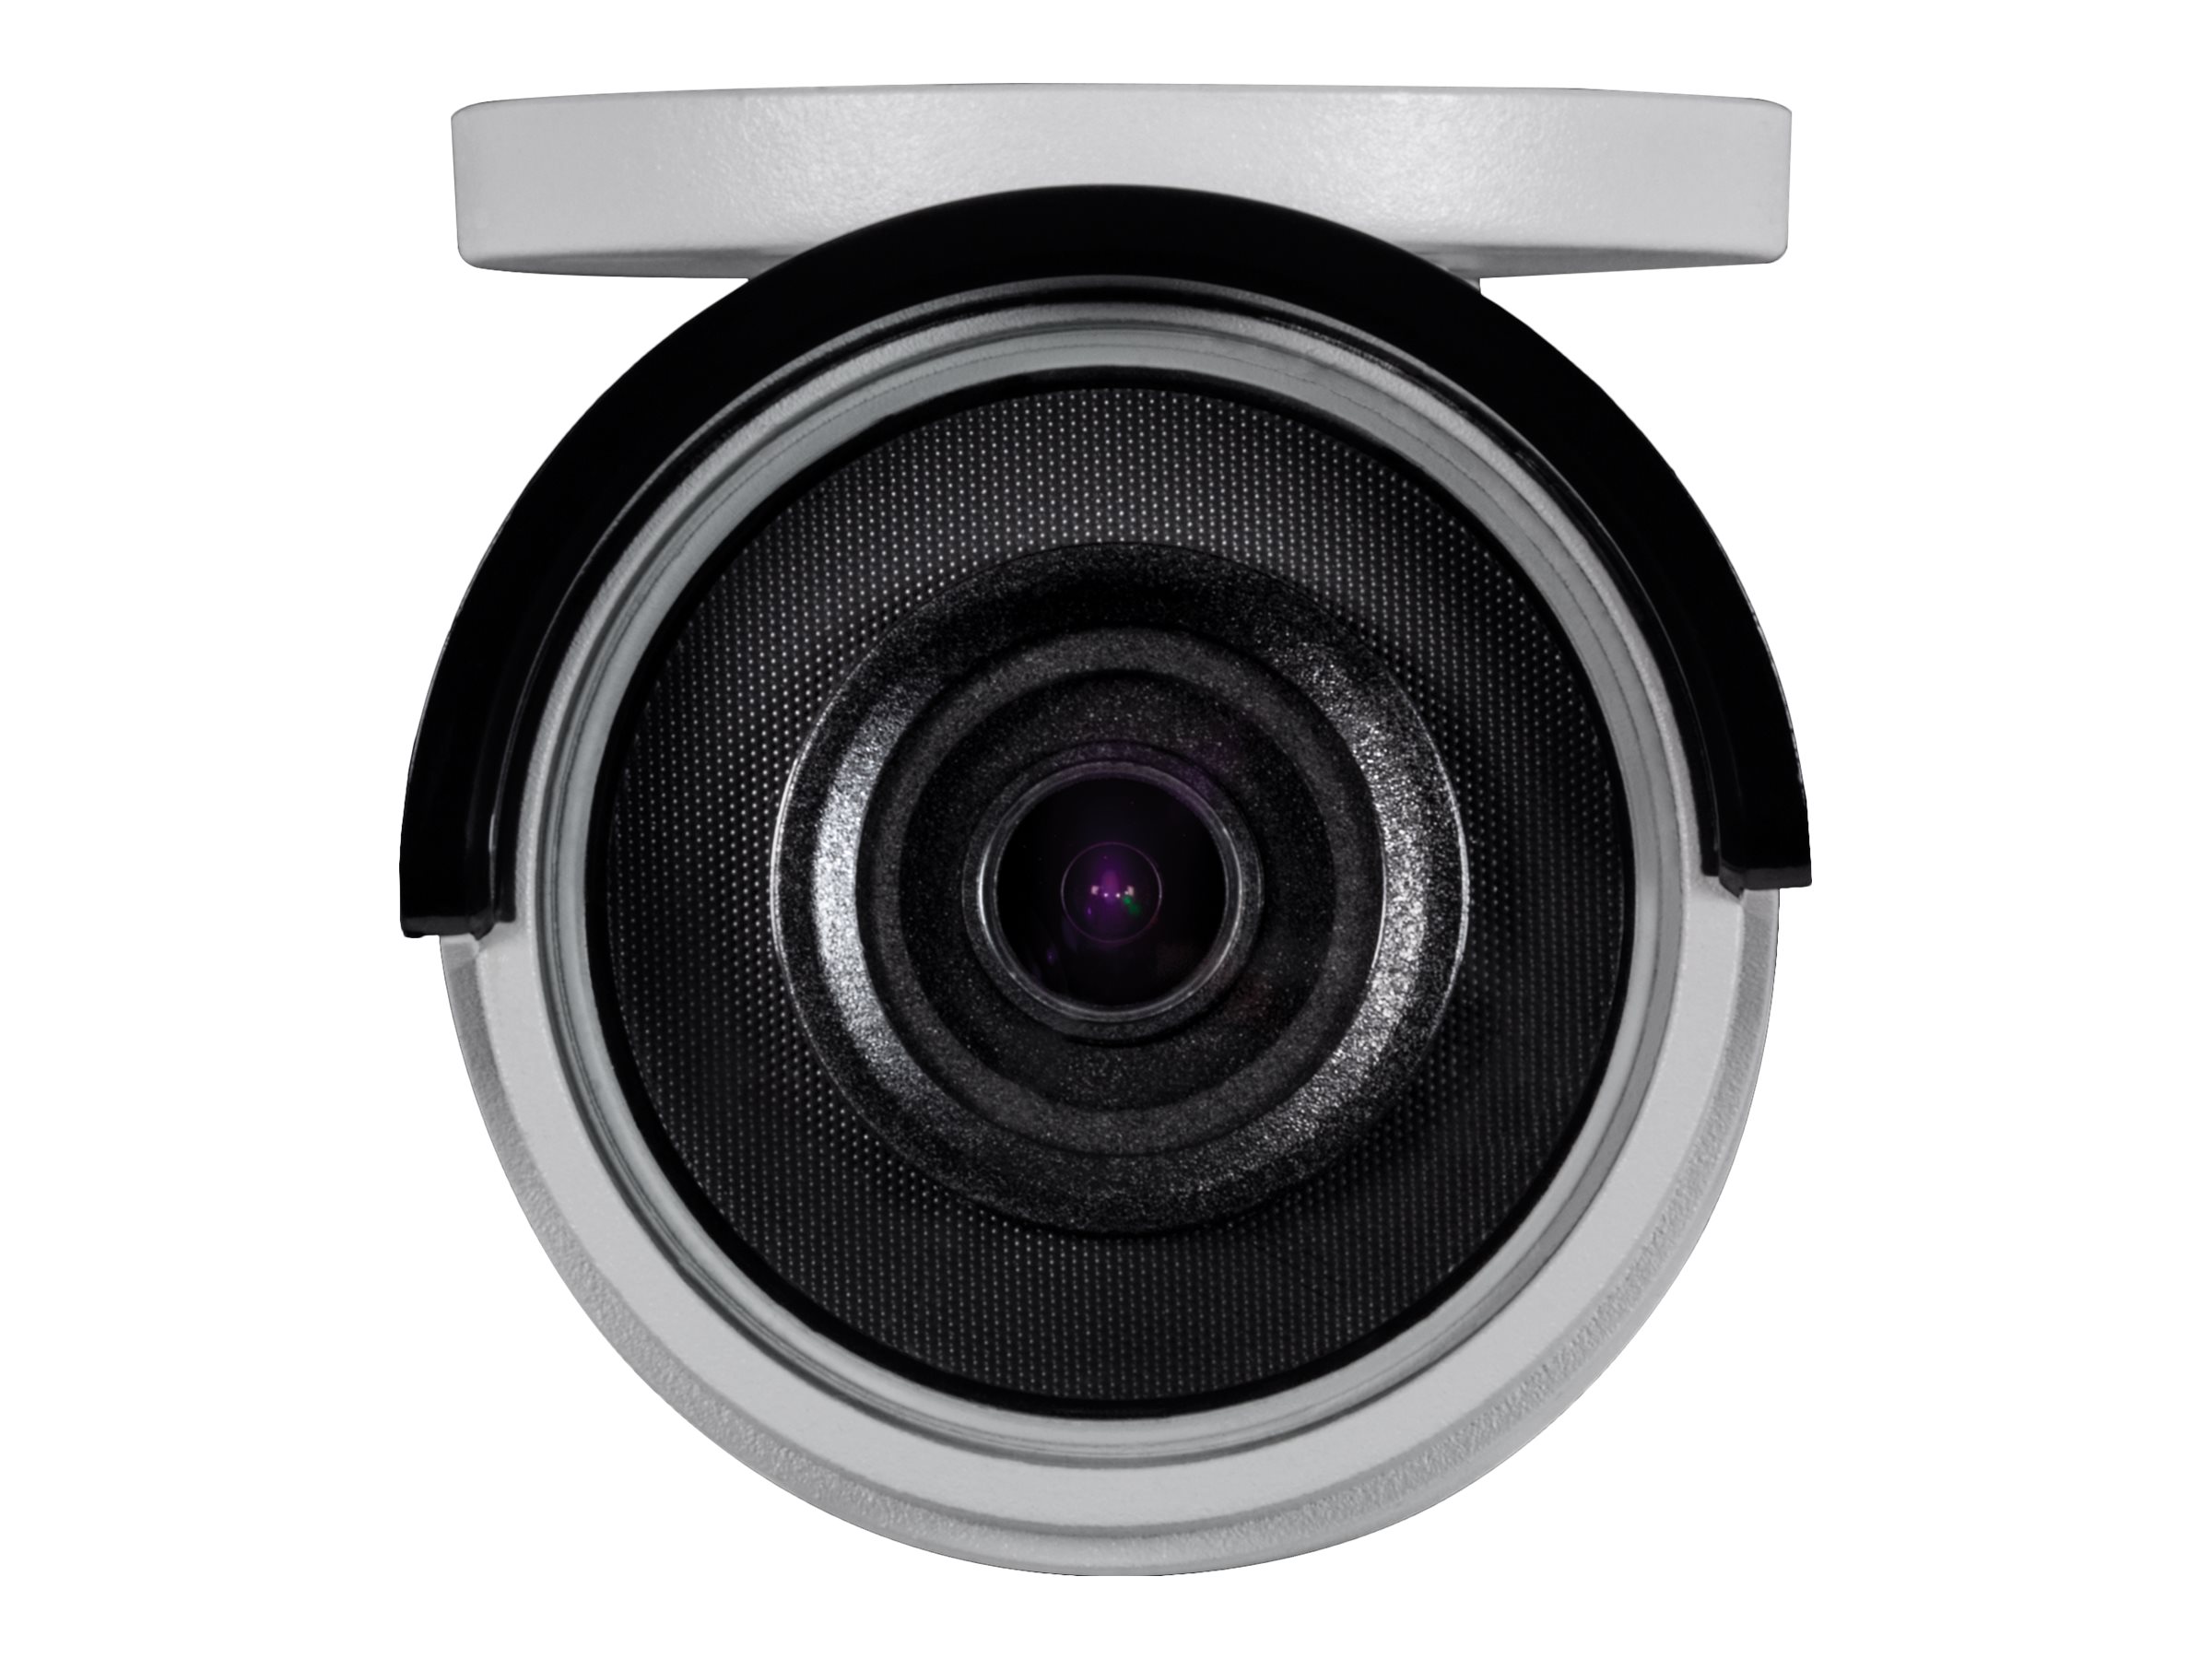 TRENDnet TV IP326PI - Network surveillance camera